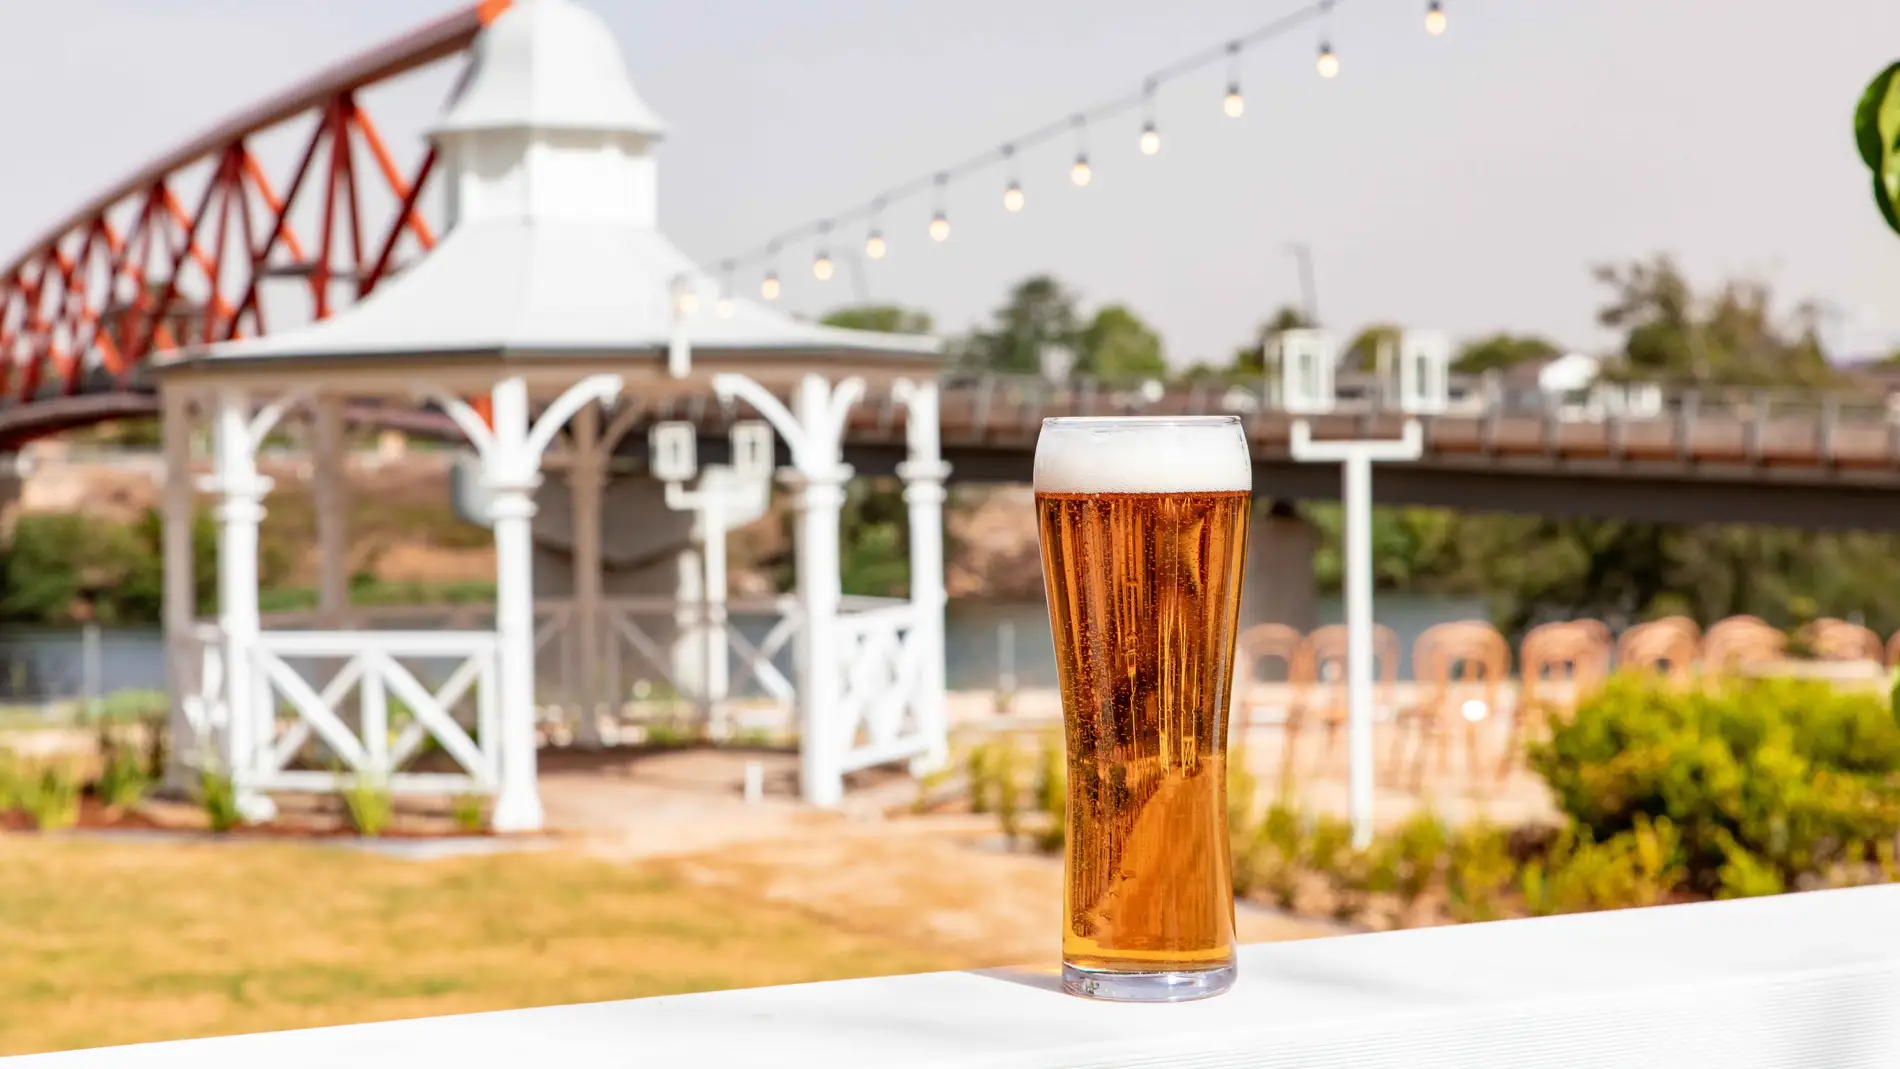 Copa de cerveza sobre una mesa. Al fondo vistas de una glorieta y un puente sobre un río